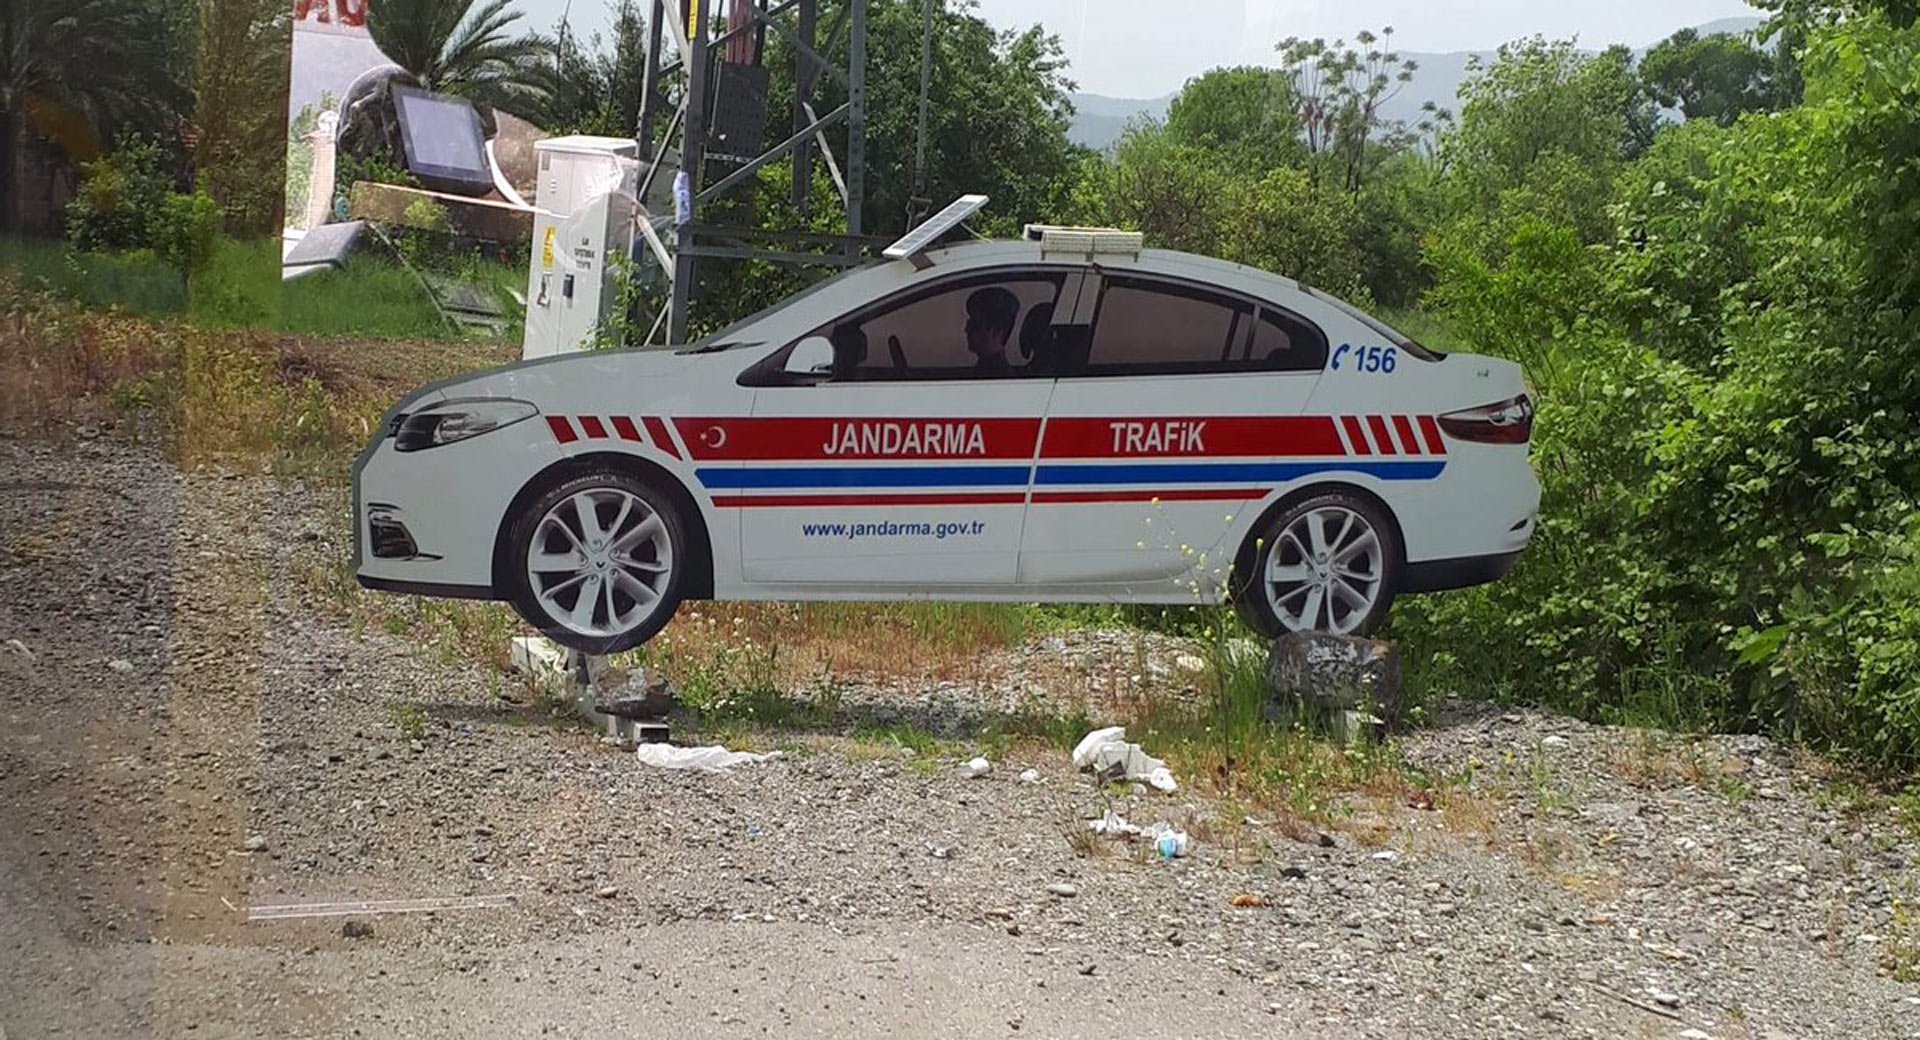 لإخافة السيارات المسرعة.. الشرطة التركية تستخدم سيارات مزيفة من الورق!